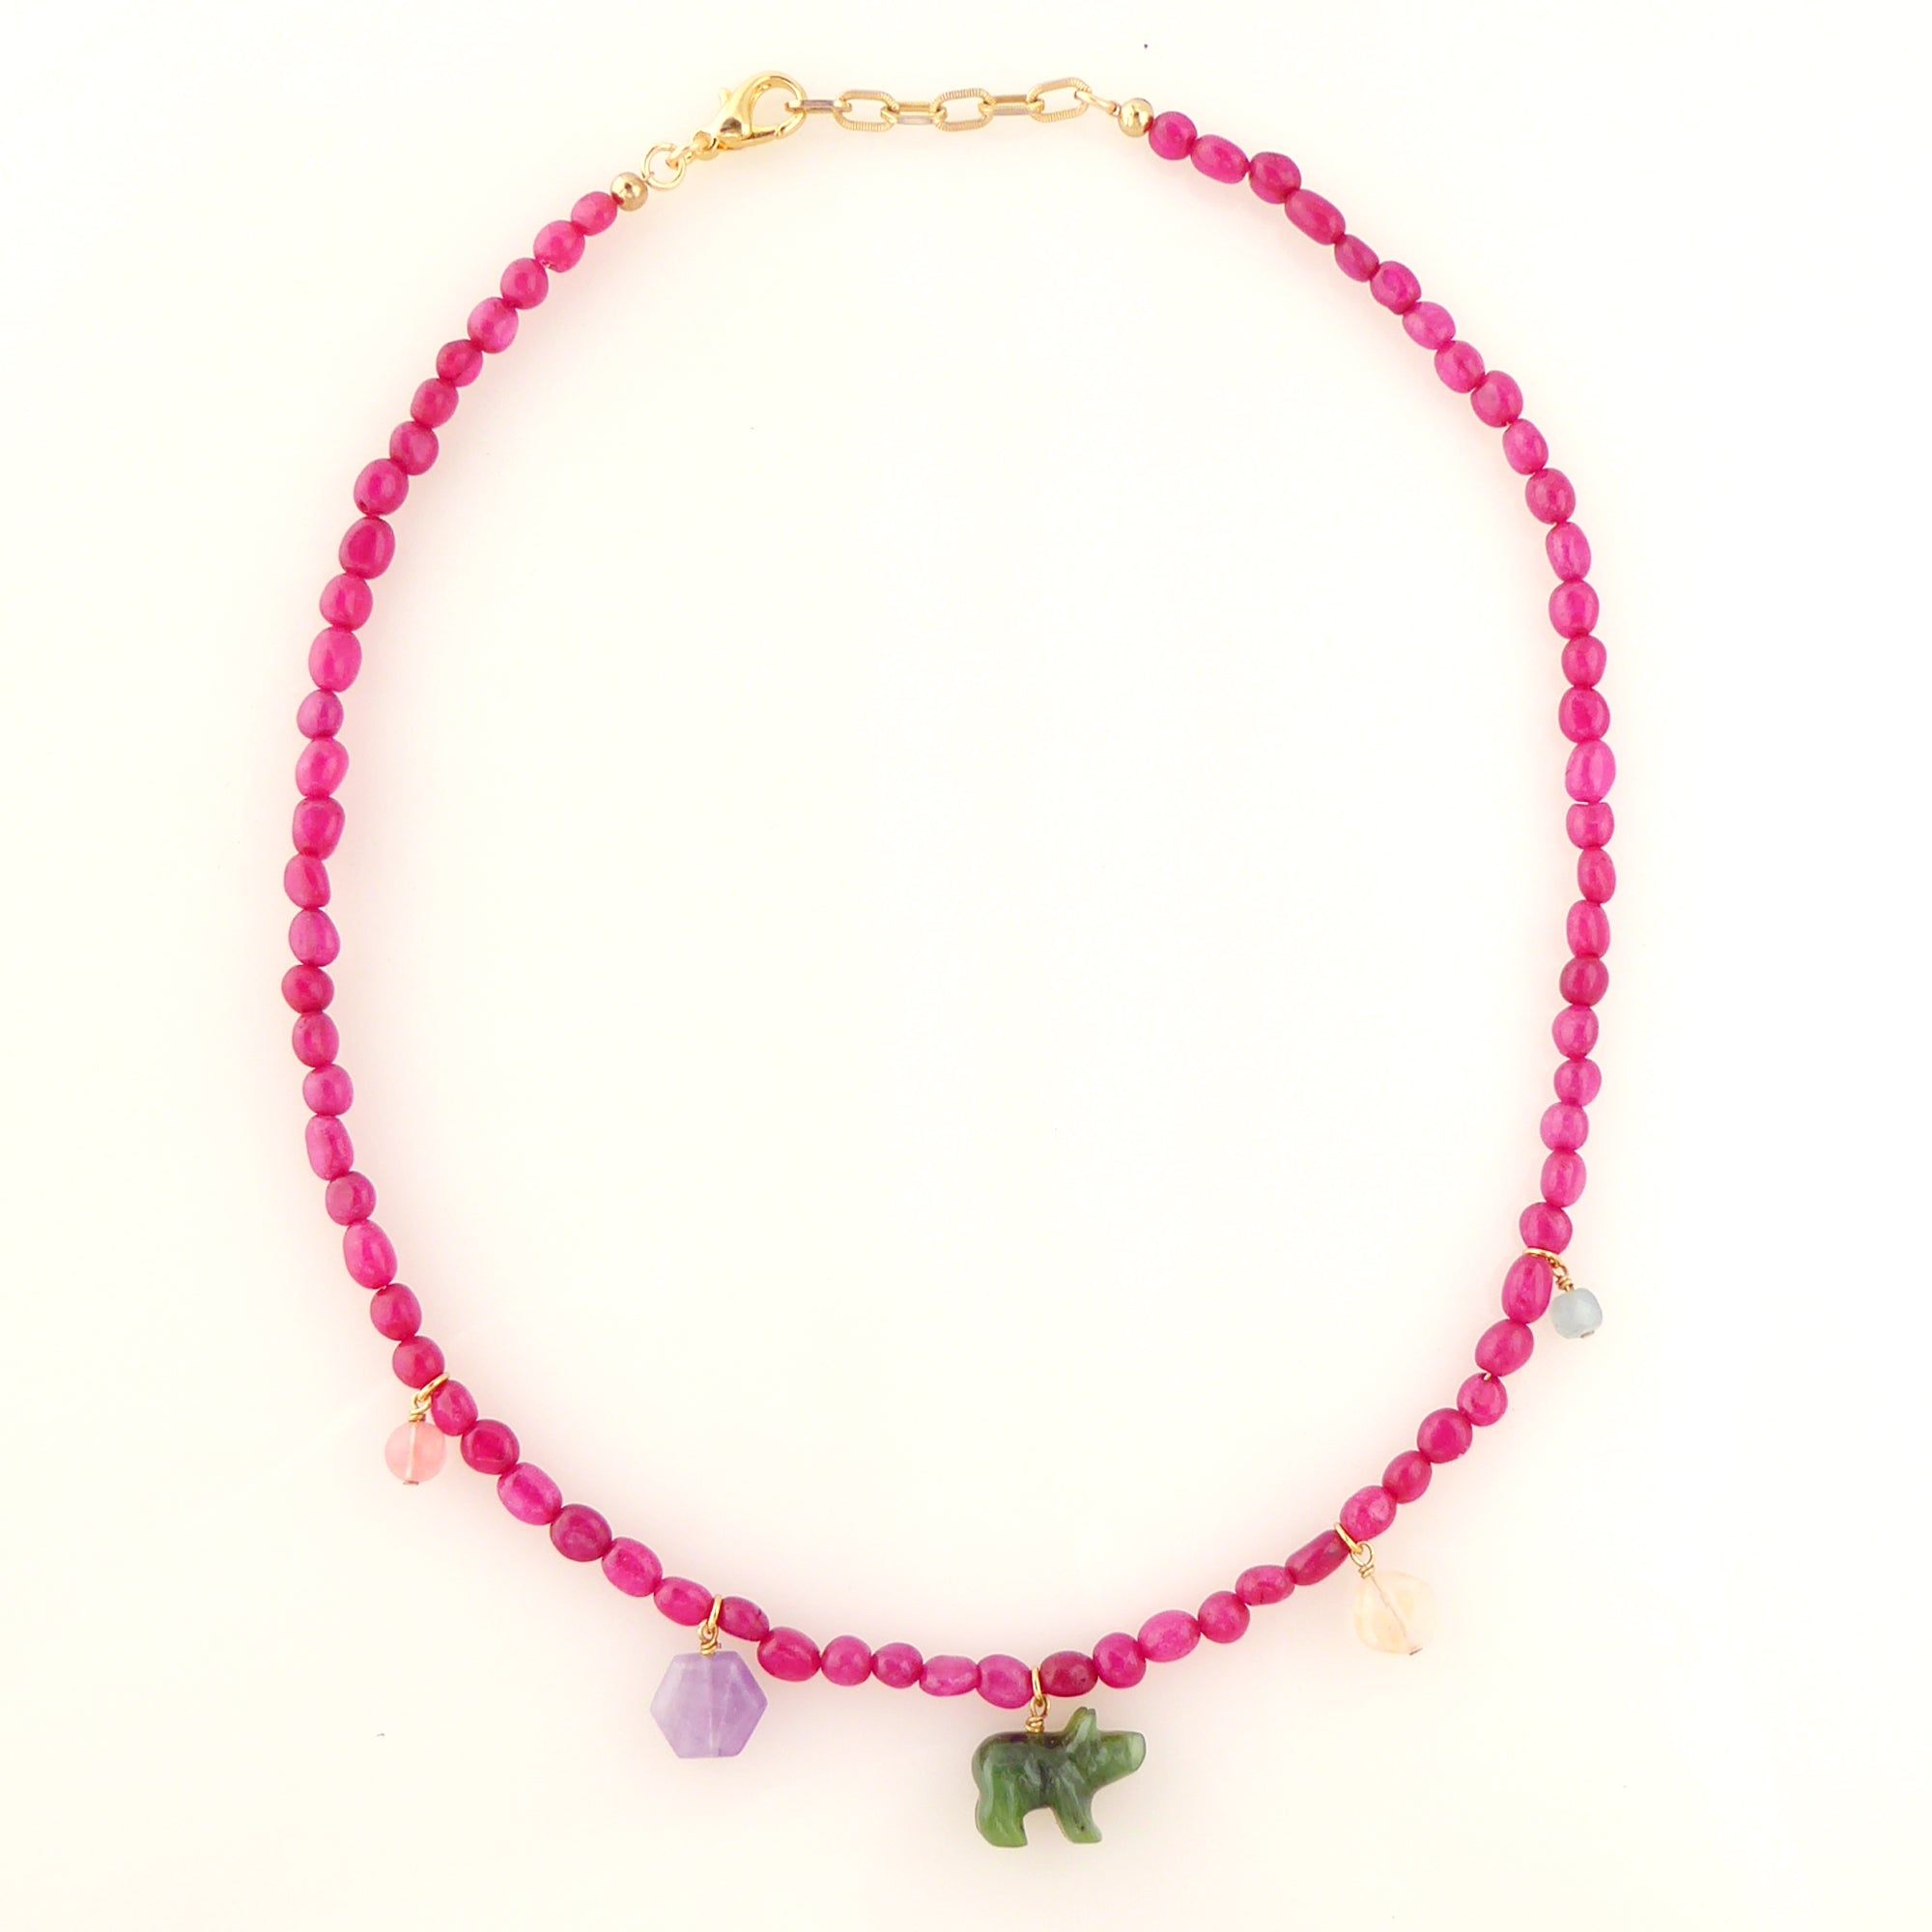 Candy stone necklace by Jenny Dayco 5